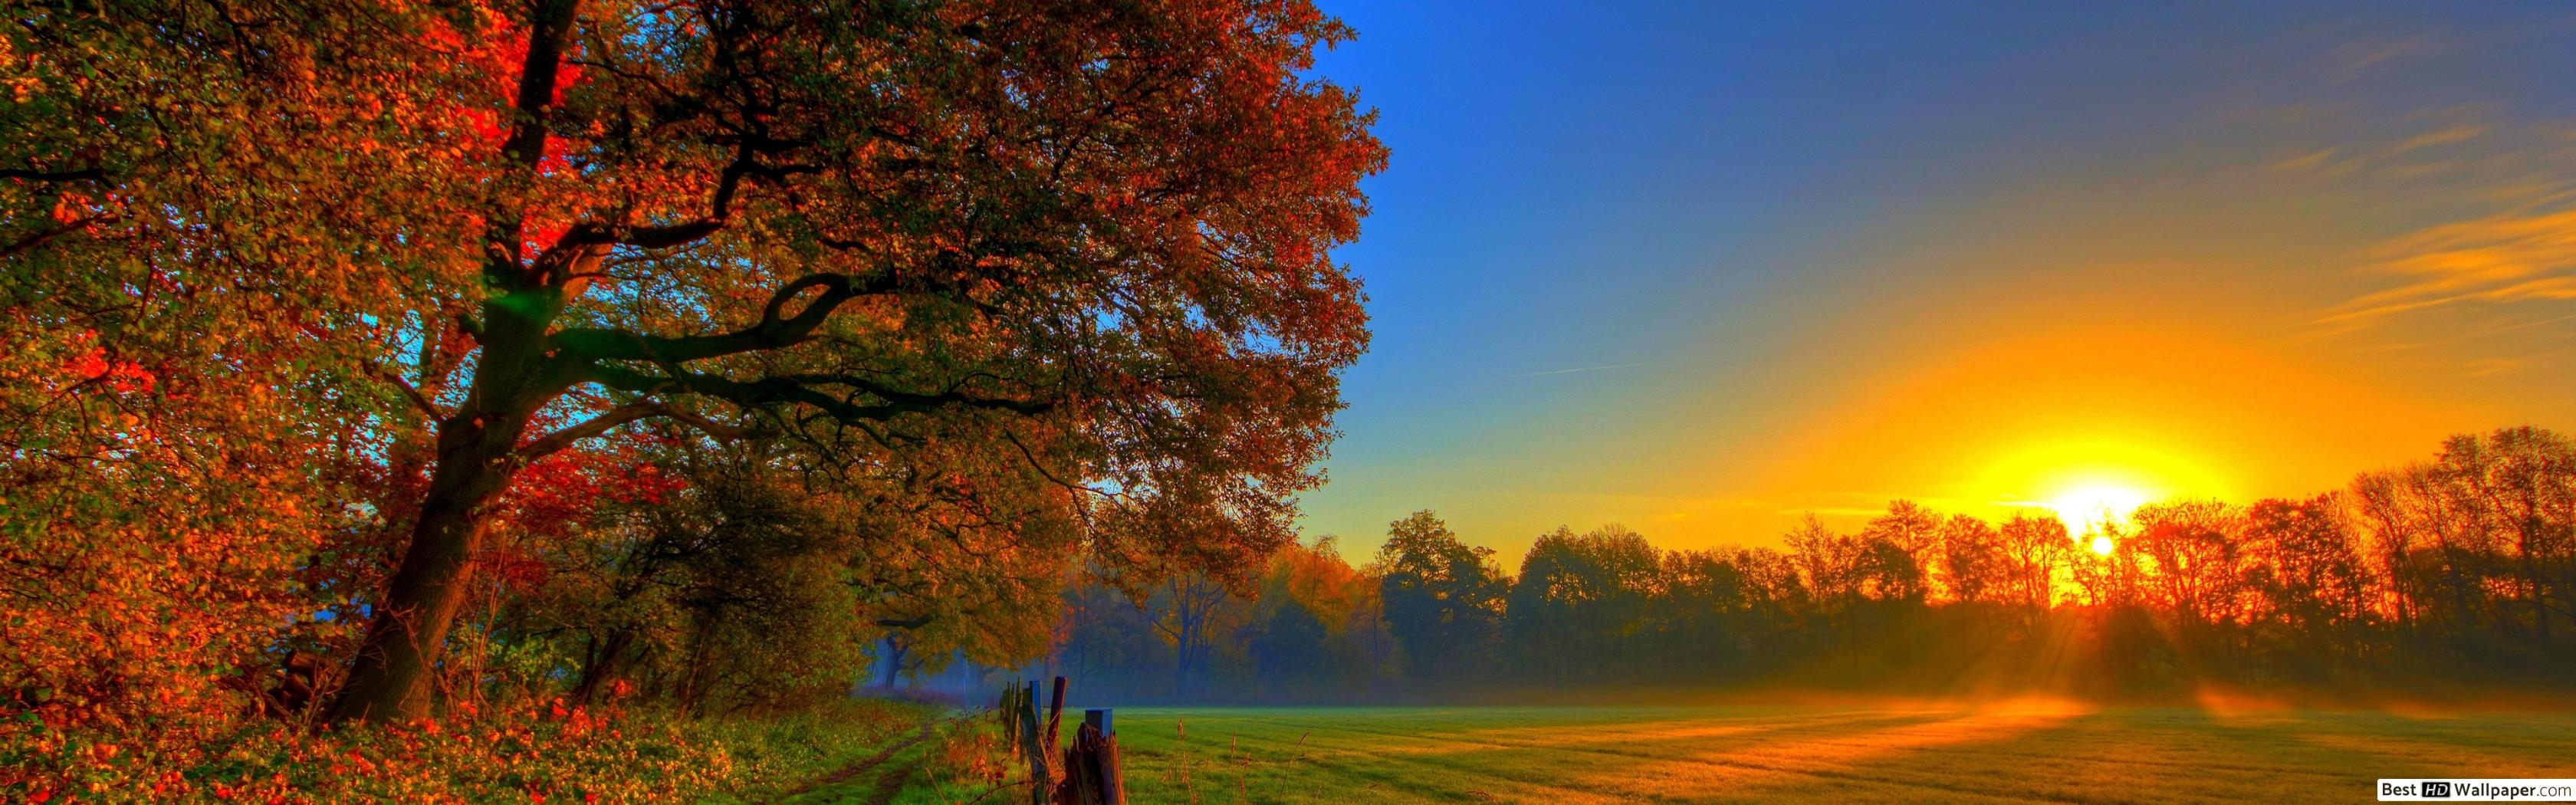 Autumn Sunset Wallpaper Widescreen - HD Wallpaper 